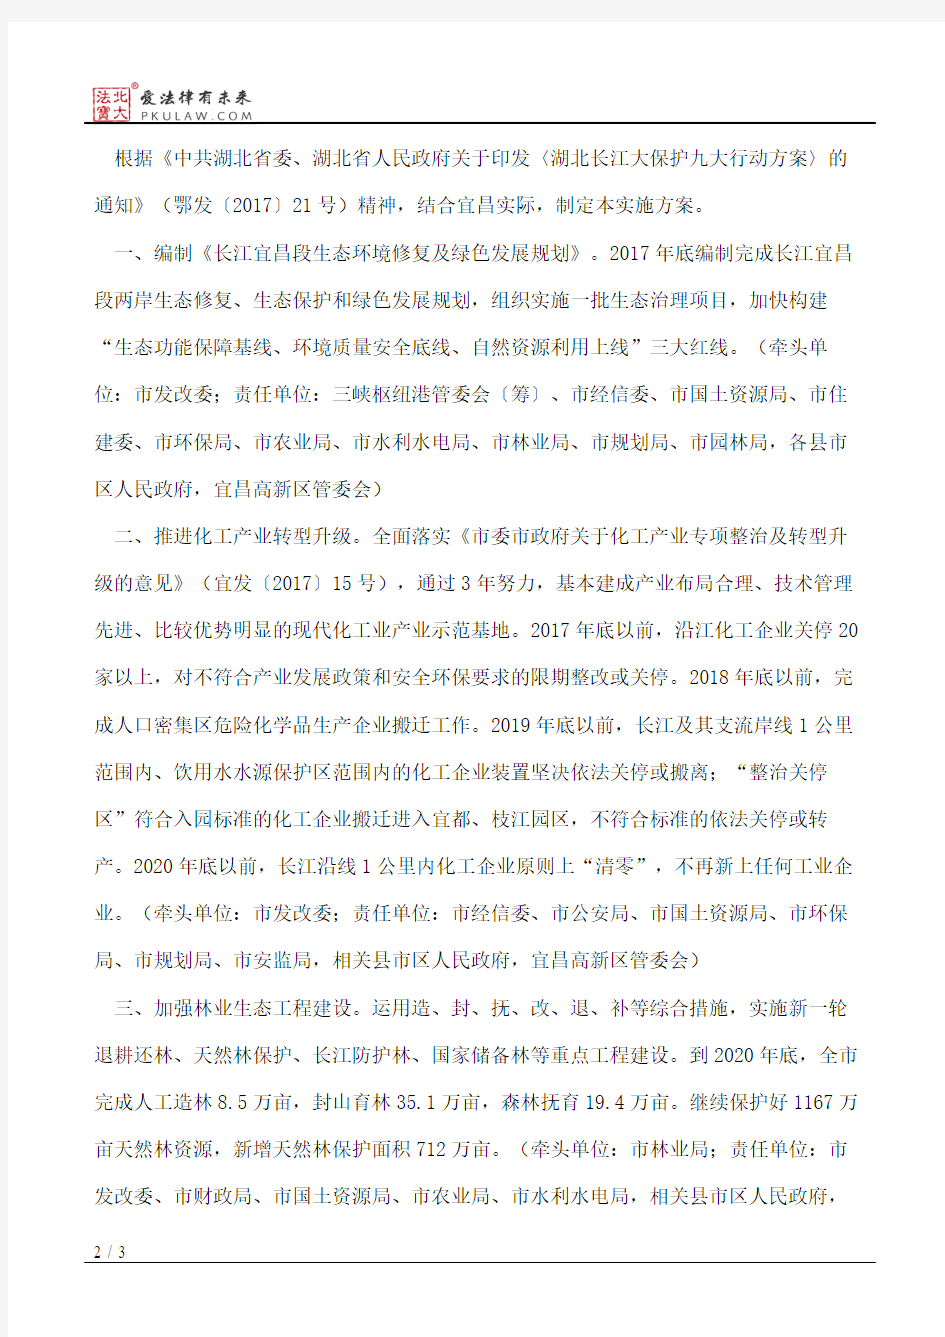 宜昌市人民政府关于印发长江大保护宜昌实施方案的通知